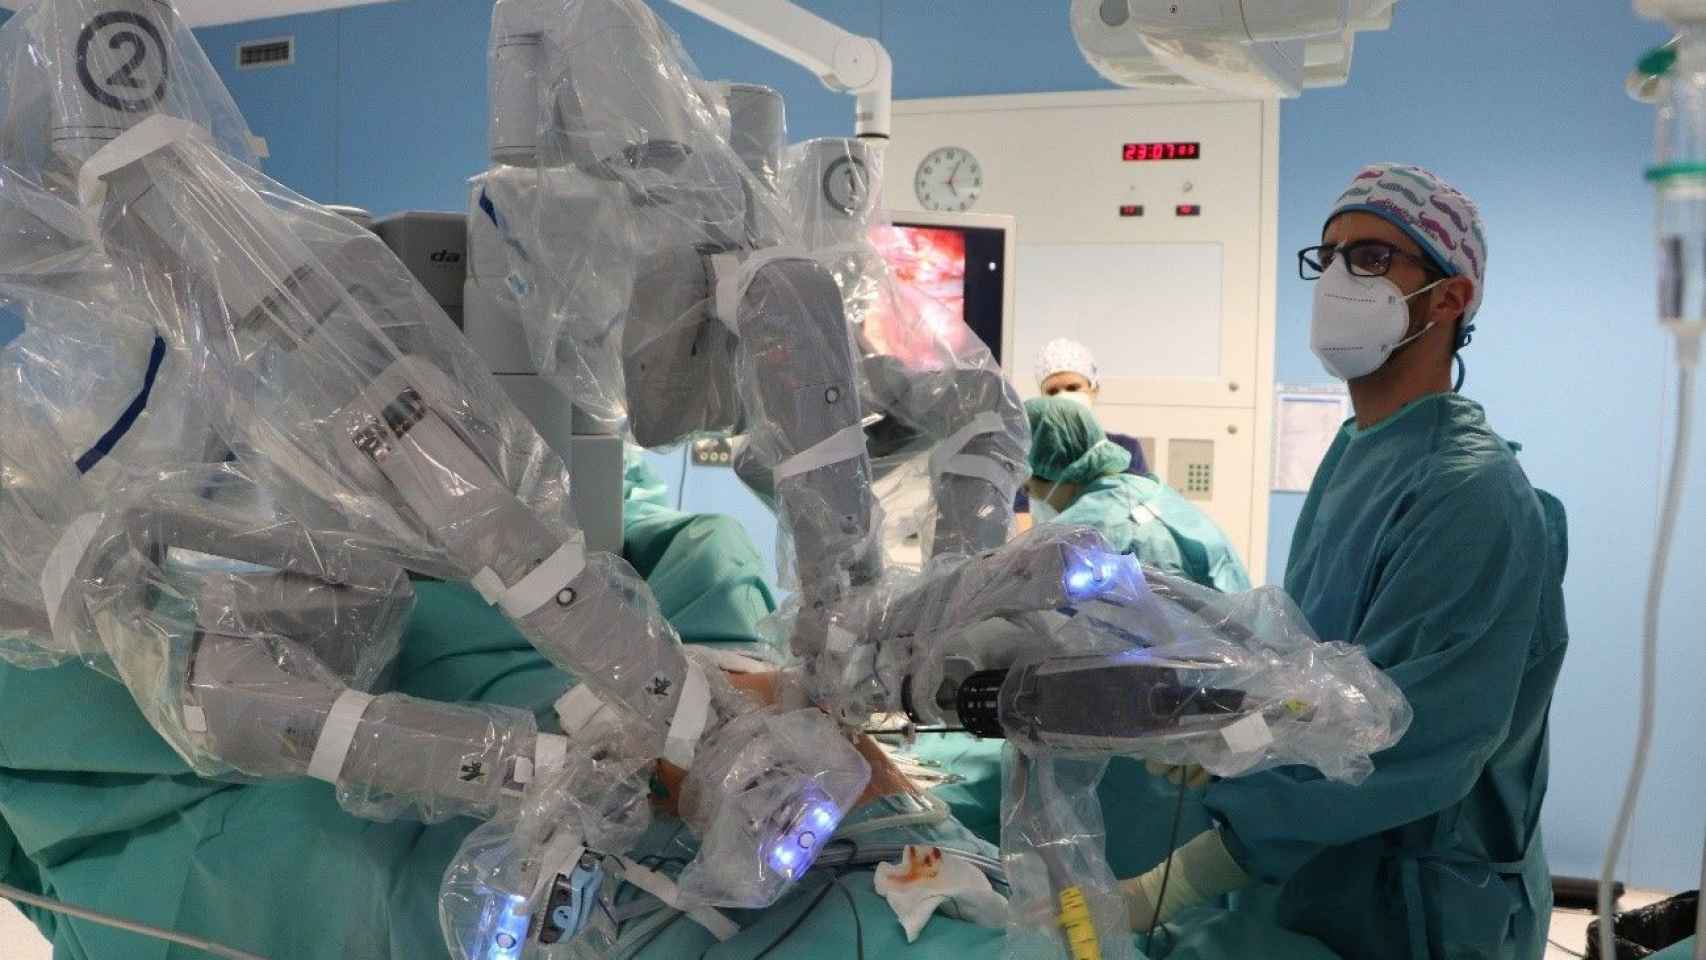 El cirujano controla el robot Da Vinci durante una intervención quirúrgica: la cirugía robótica es más precisa y segura / QUIRÓNSALUD